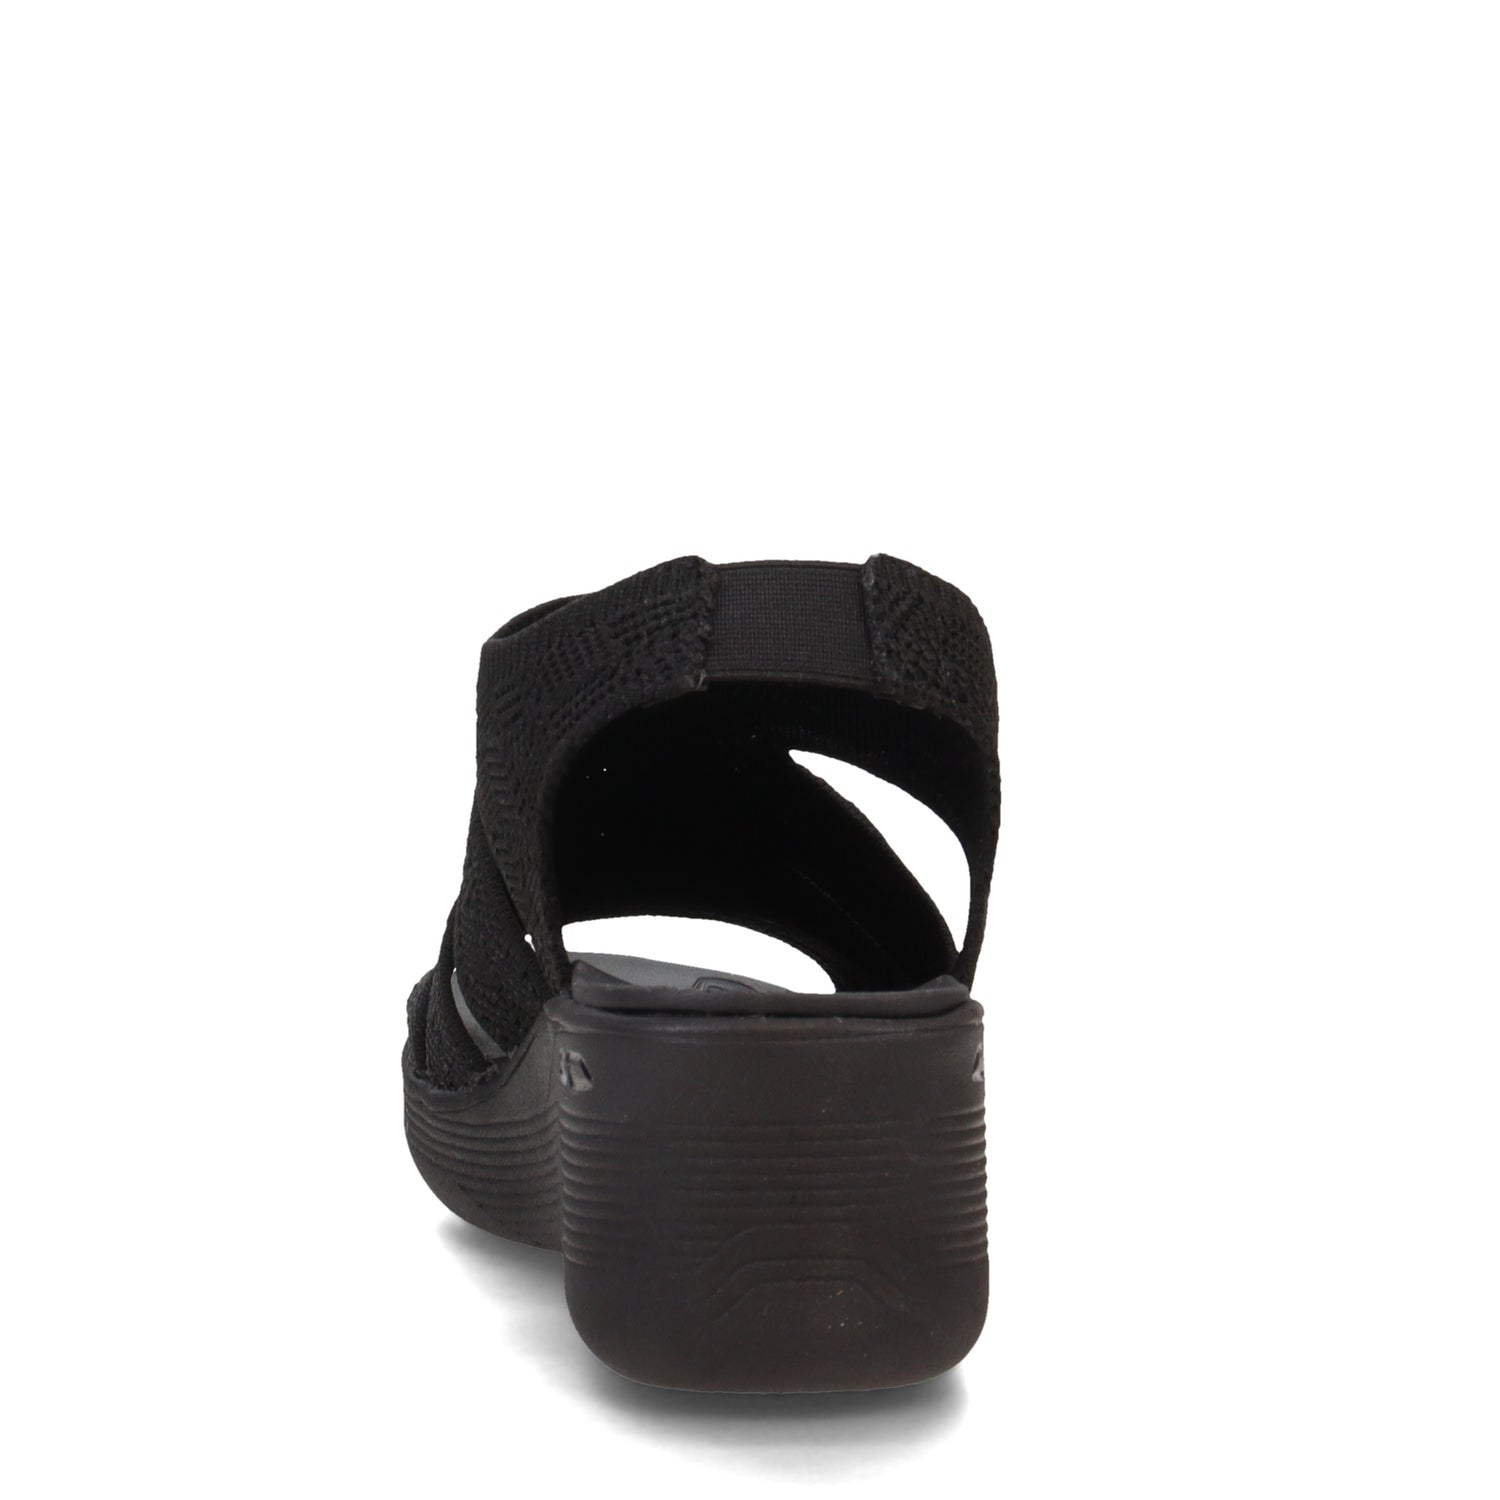 Peltz Shoes  Women's Skechers Pier Lite - Crochet Sandal Black/Black 163394-BBK